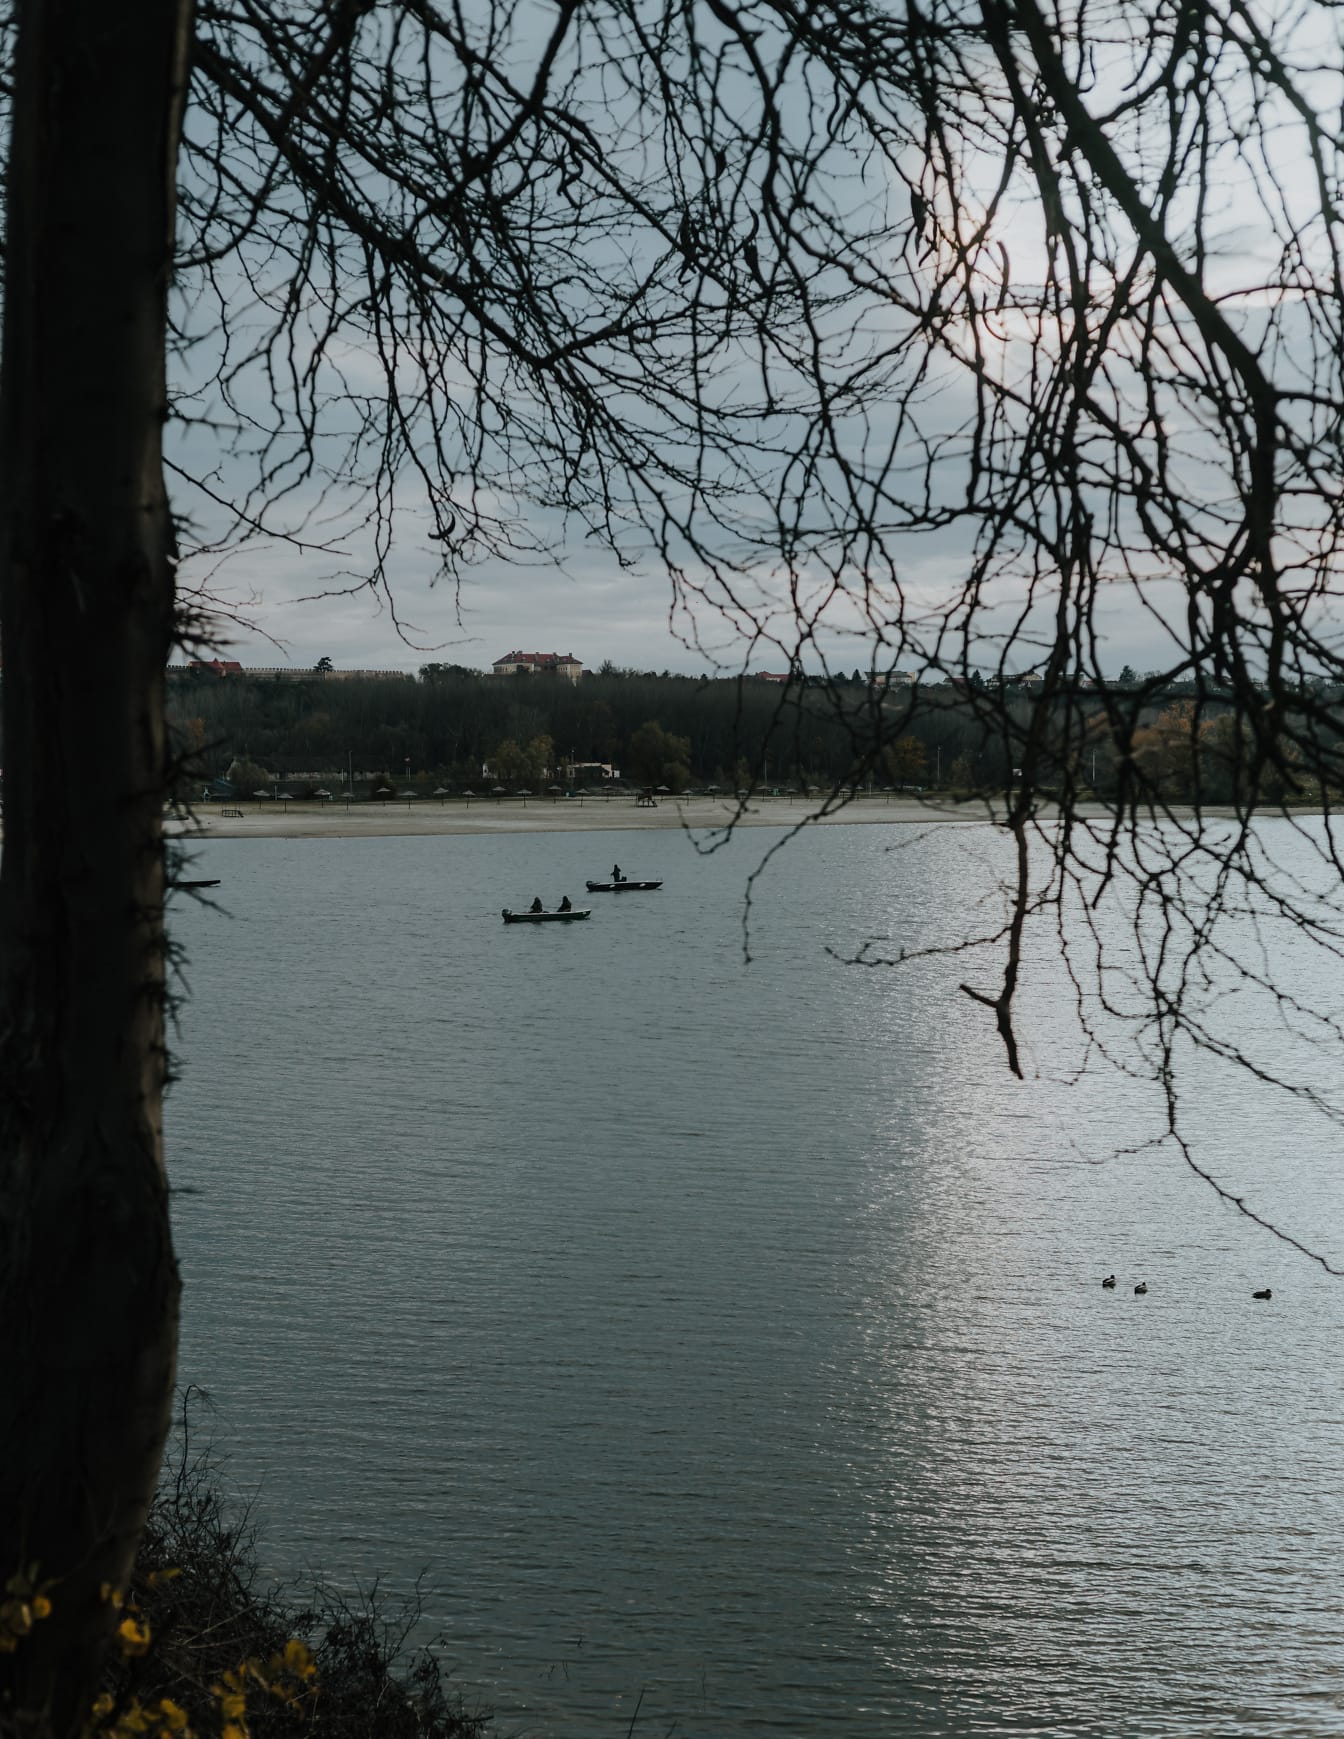 Petits bateaux de pêche sur l’eau calme du lac